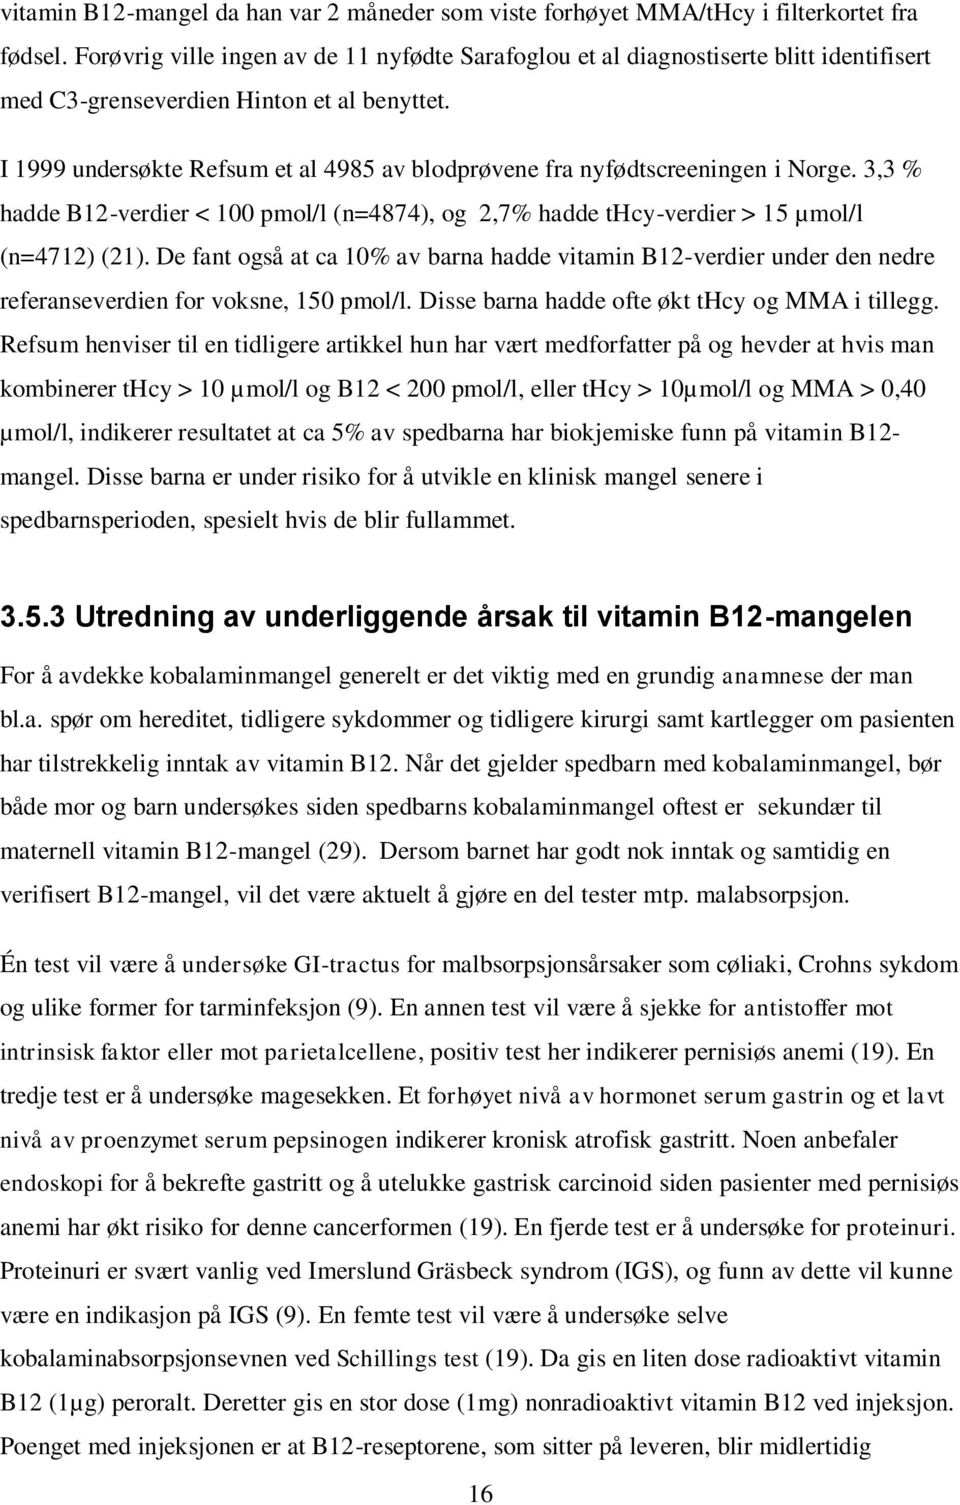 I 1999 undersøkte Refsum et al 4985 av blodprøvene fra nyfødtscreeningen i Norge. 3,3 % hadde B12-verdier < 100 pmol/l (n=4874), og 2,7% hadde thcy-verdier > 15 µmol/l (n=4712) (21).